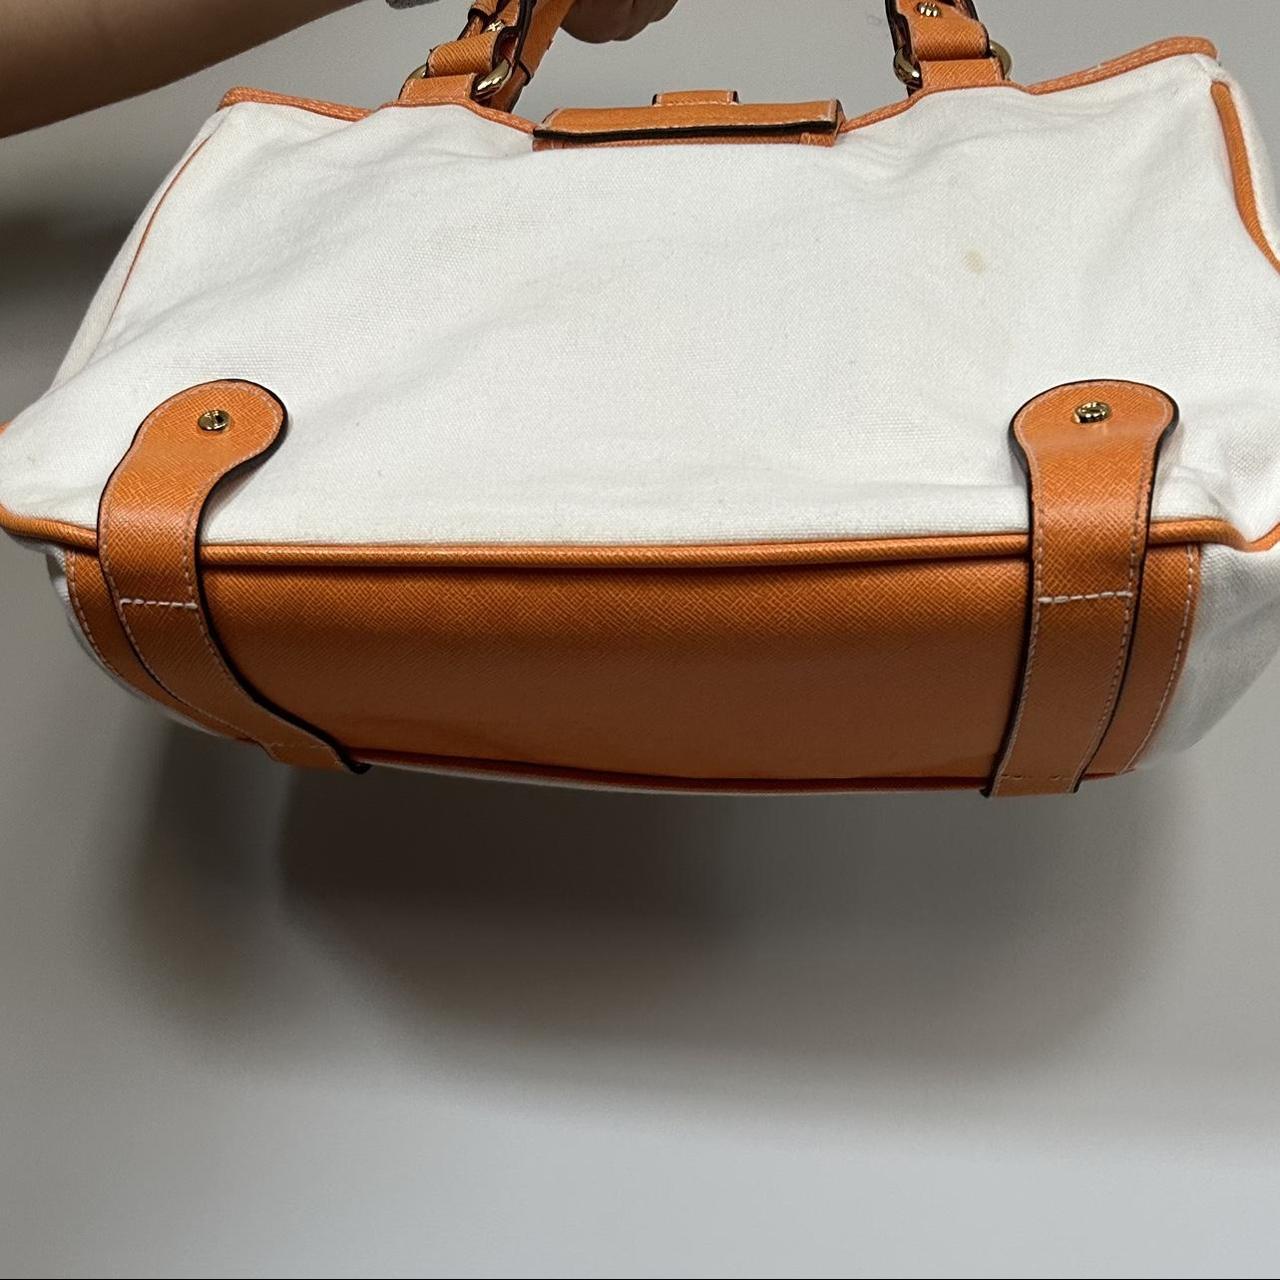 Isaac Mizrahi | Bags | Imnyc Isaac Mizrahi Purse Large Shoulder Bag |  Poshmark